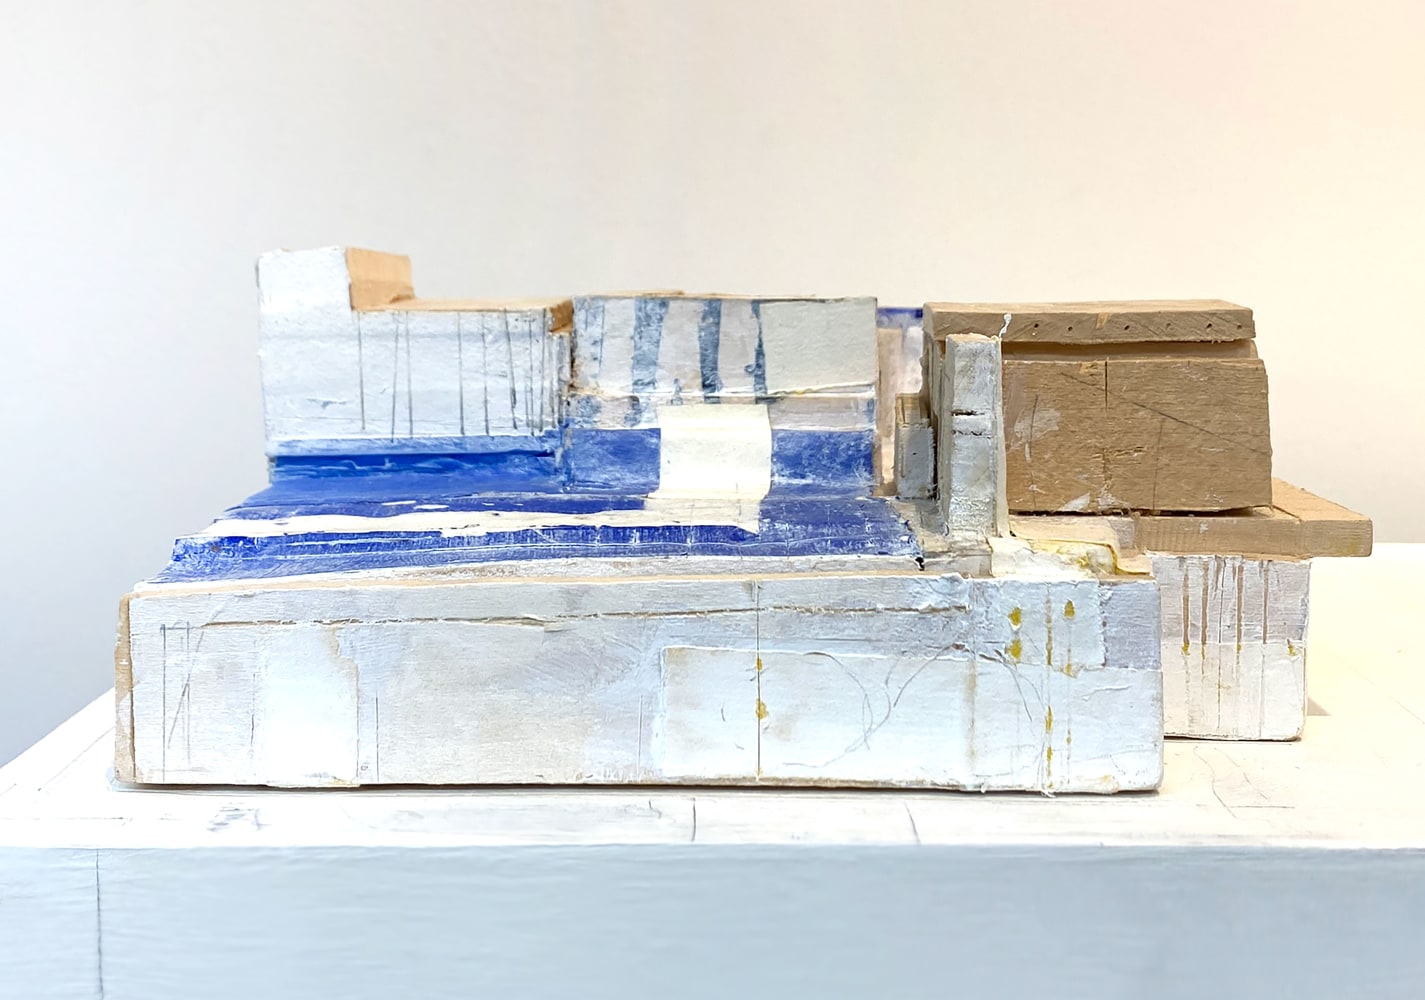 Stuart Shils, Conceptual Morocco (detail)  15″ x 26″ x 17″ (62″ x 26″ x 17″ with pedestal)   Wood, Painted Paper, Plastic, Acrylic Paint